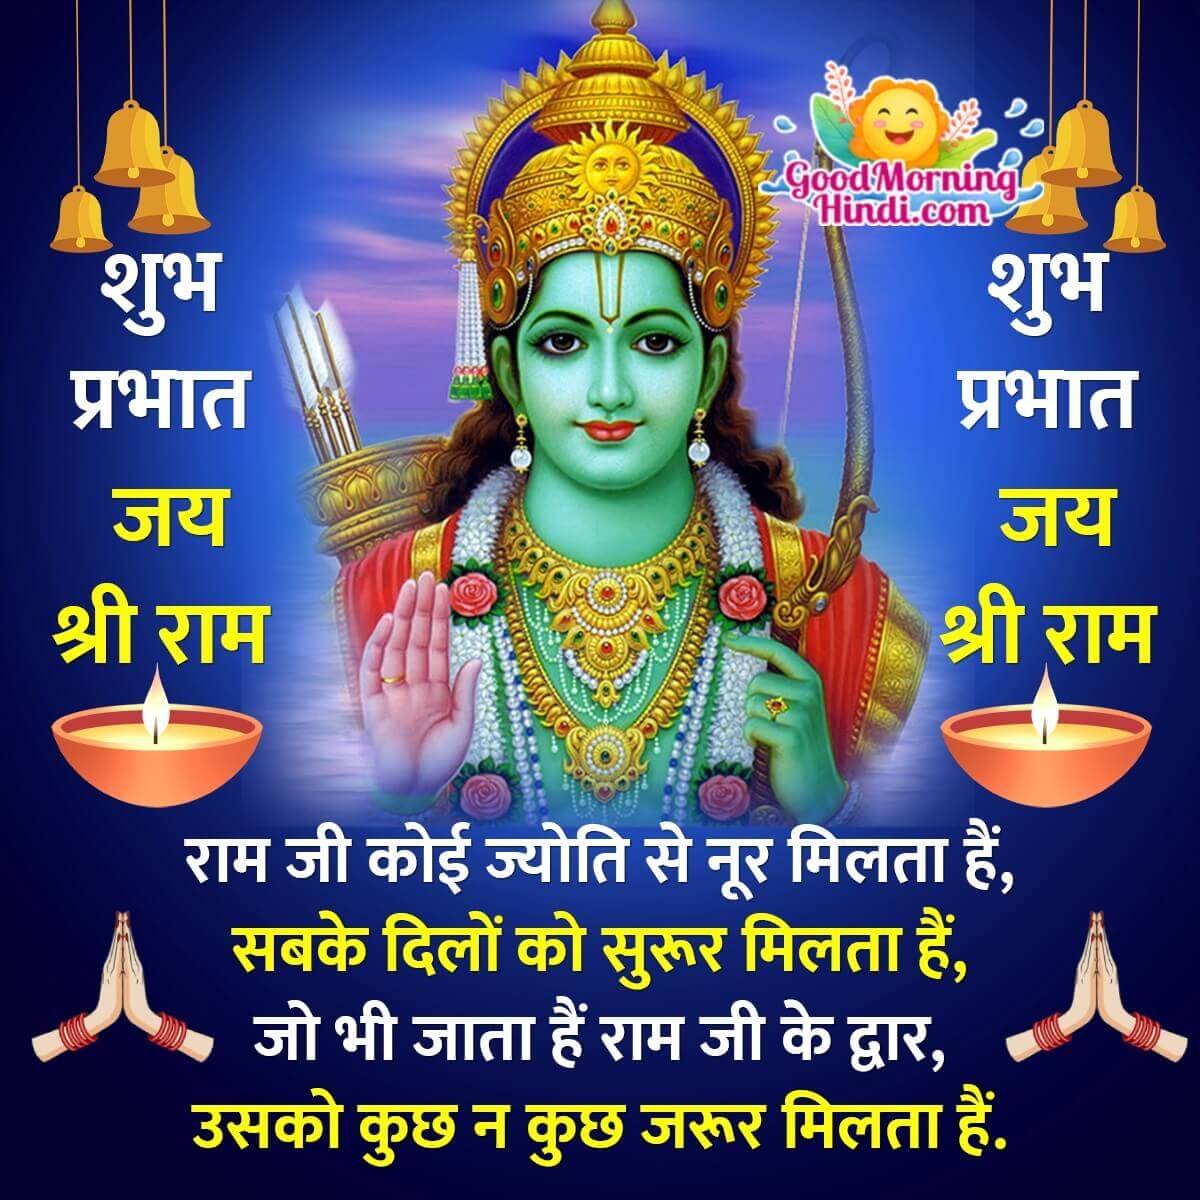 Good Morning Shri Ram Hindi Images - Good Morning Wishes & Images ...